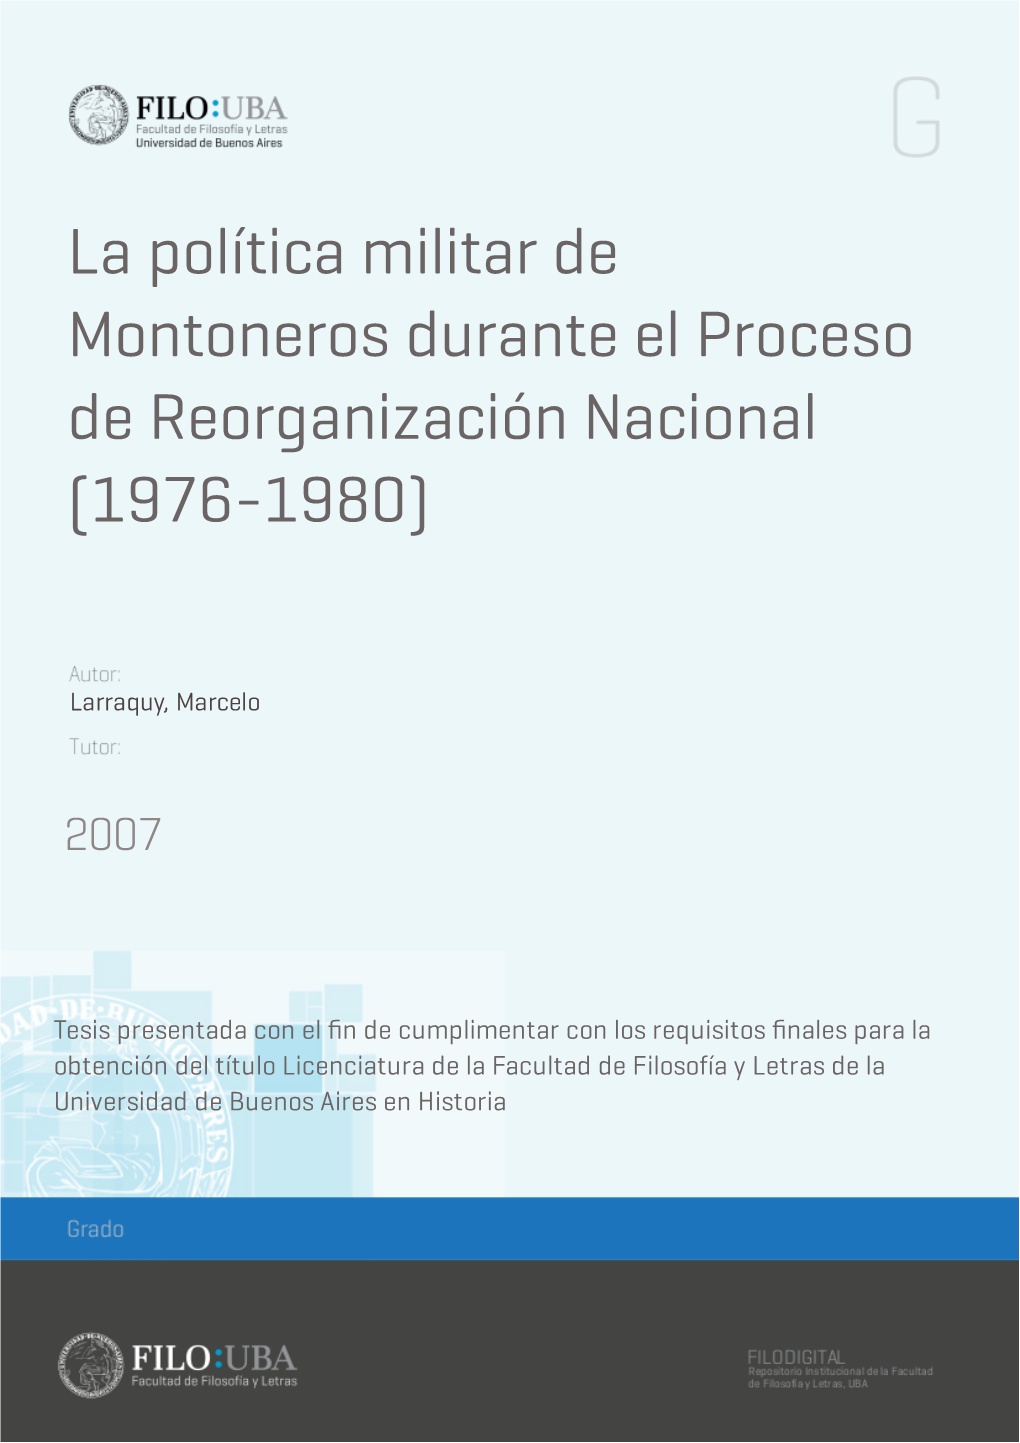 La Política Militar De Montoneros Durante El Proceso De Reorganización Nacional (1976-1980)